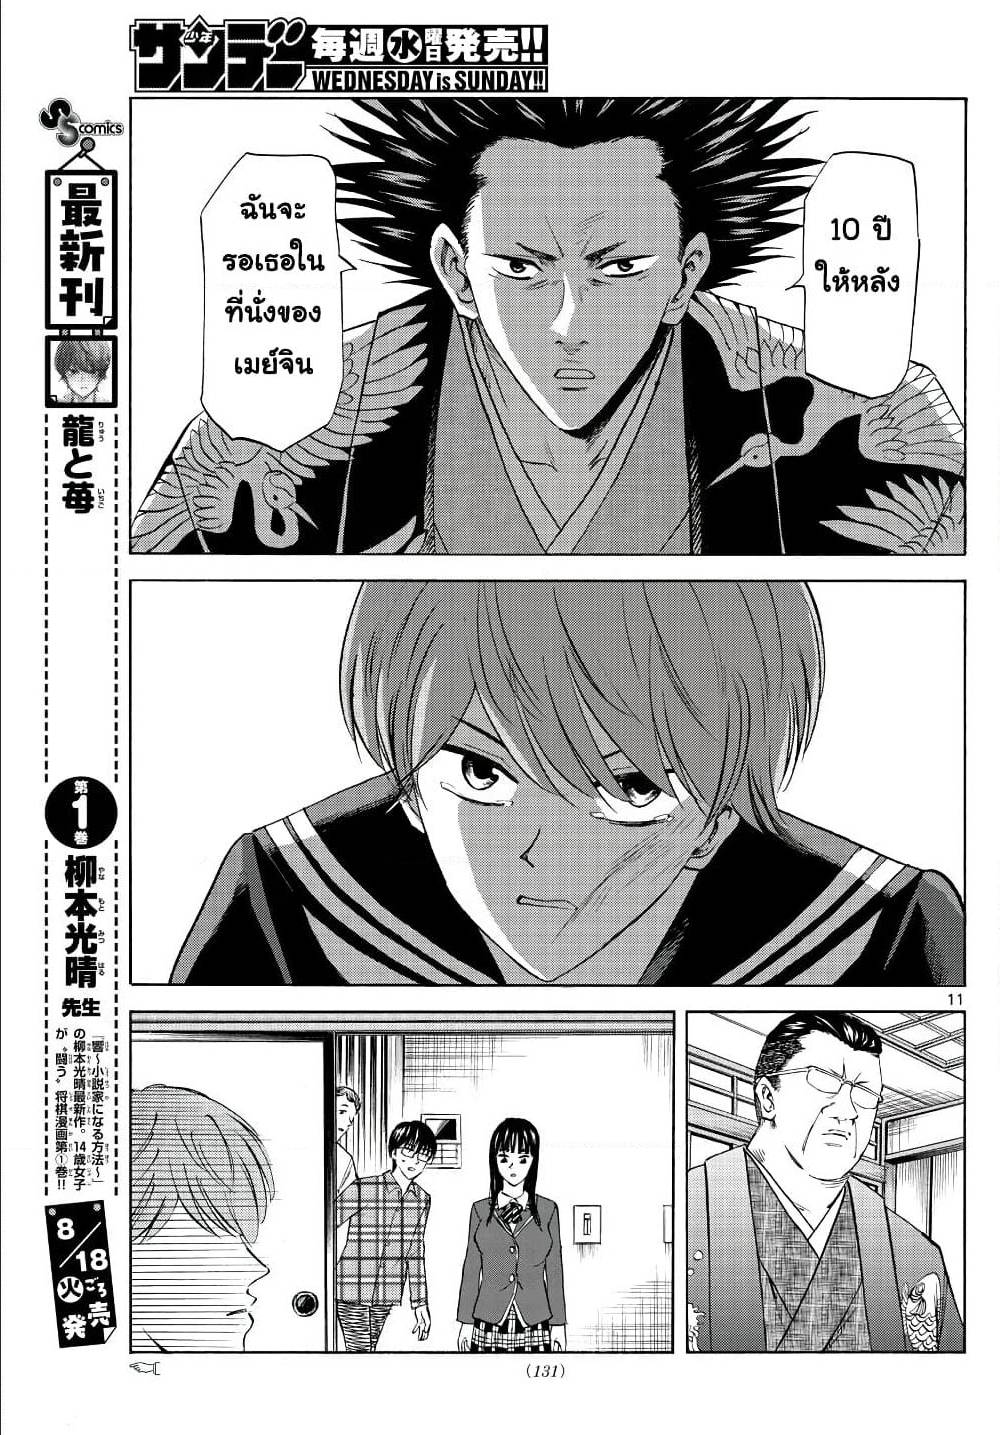 Ryuu to Ichigo 9 (11)